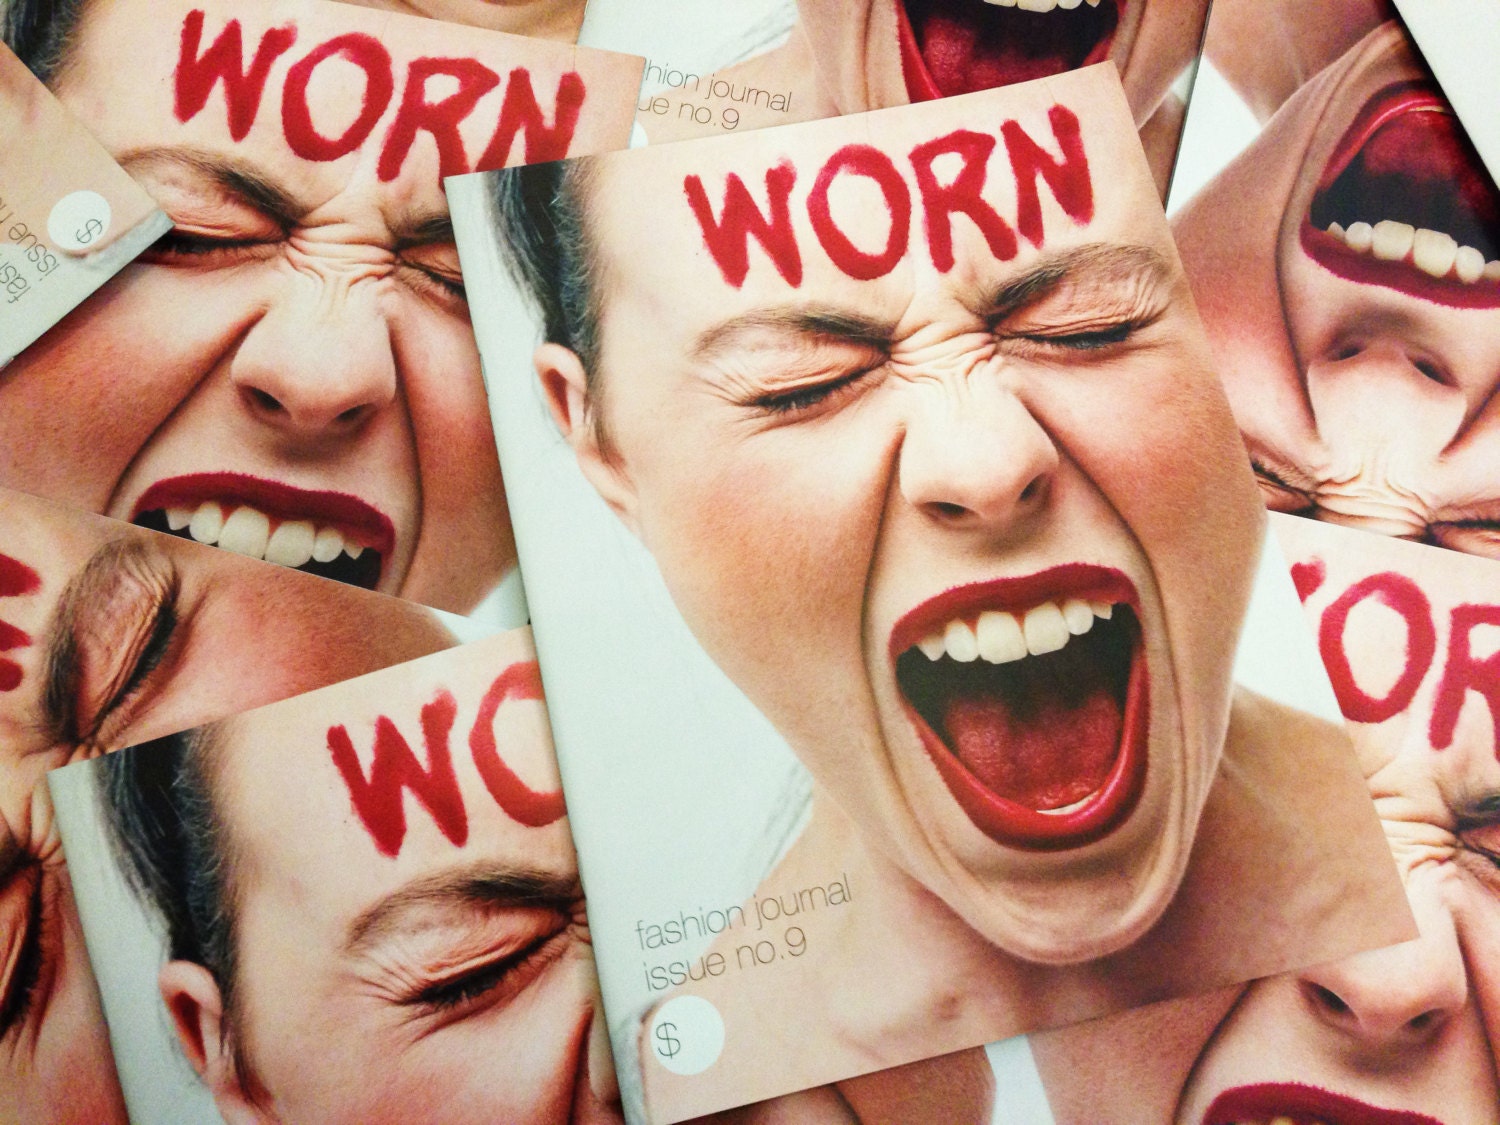 Issue no.9 WORN Fashion Journal